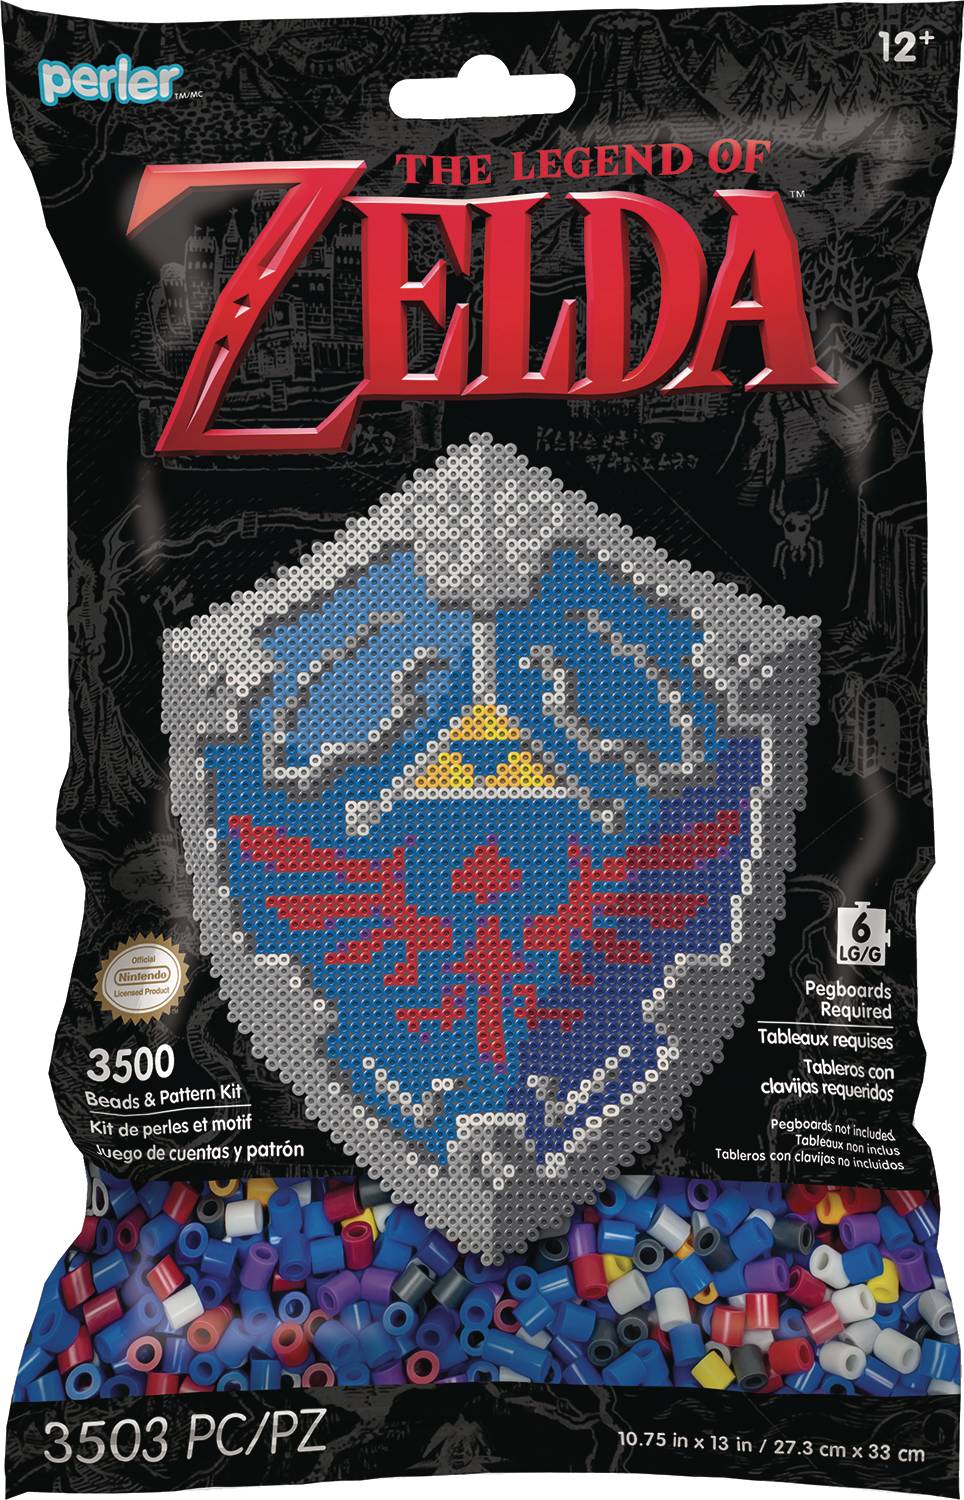 Legend of Zelda Hylian Shield Pattern Bag Kit